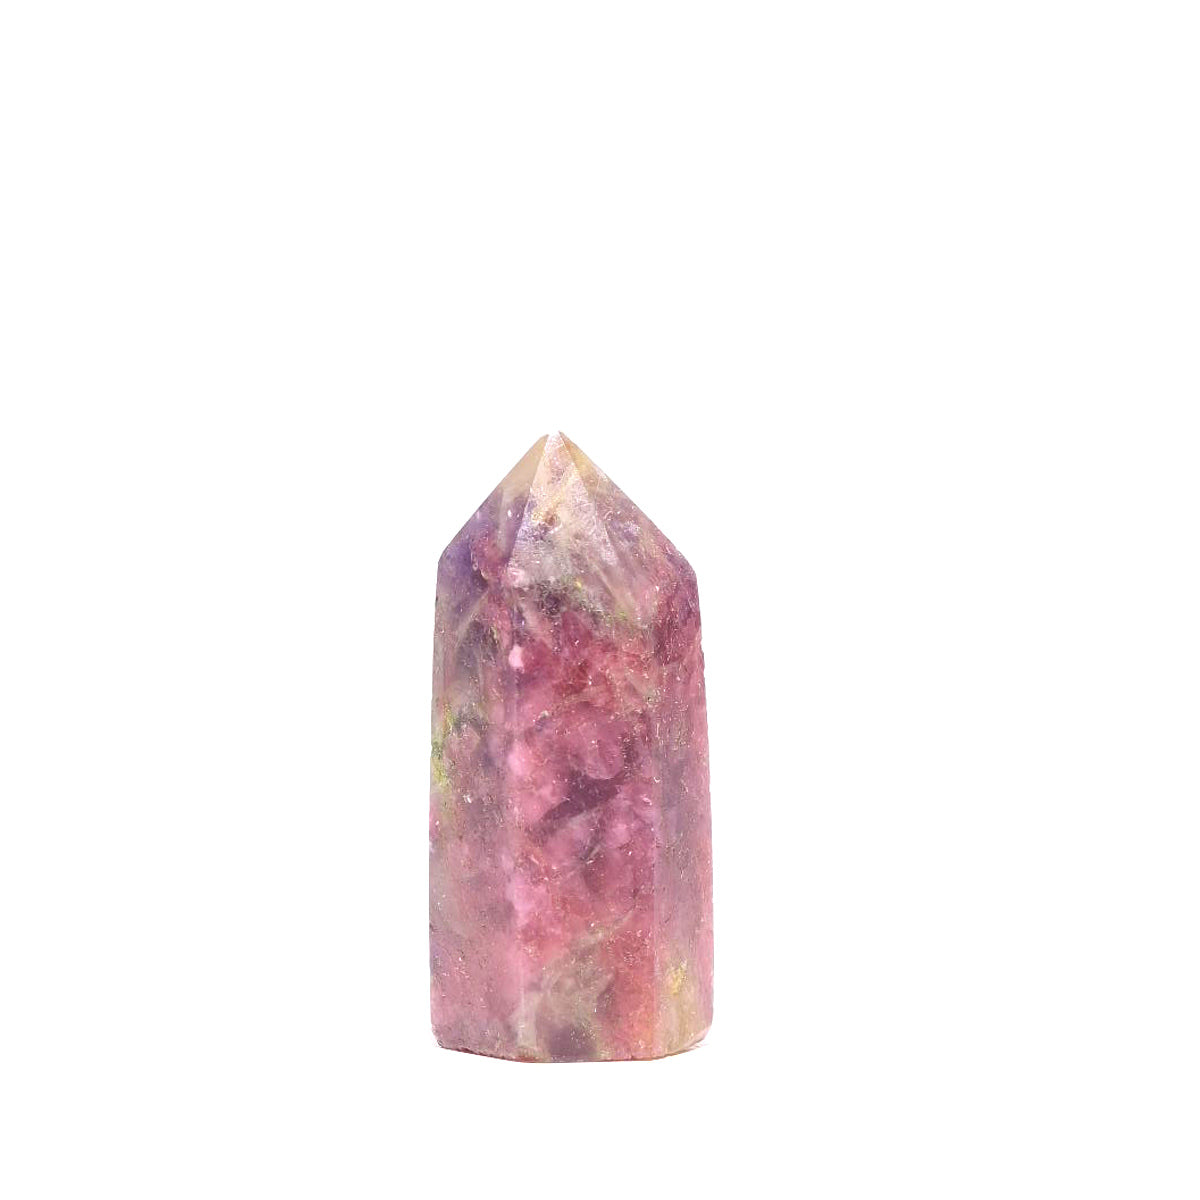 unicorn stone crystal